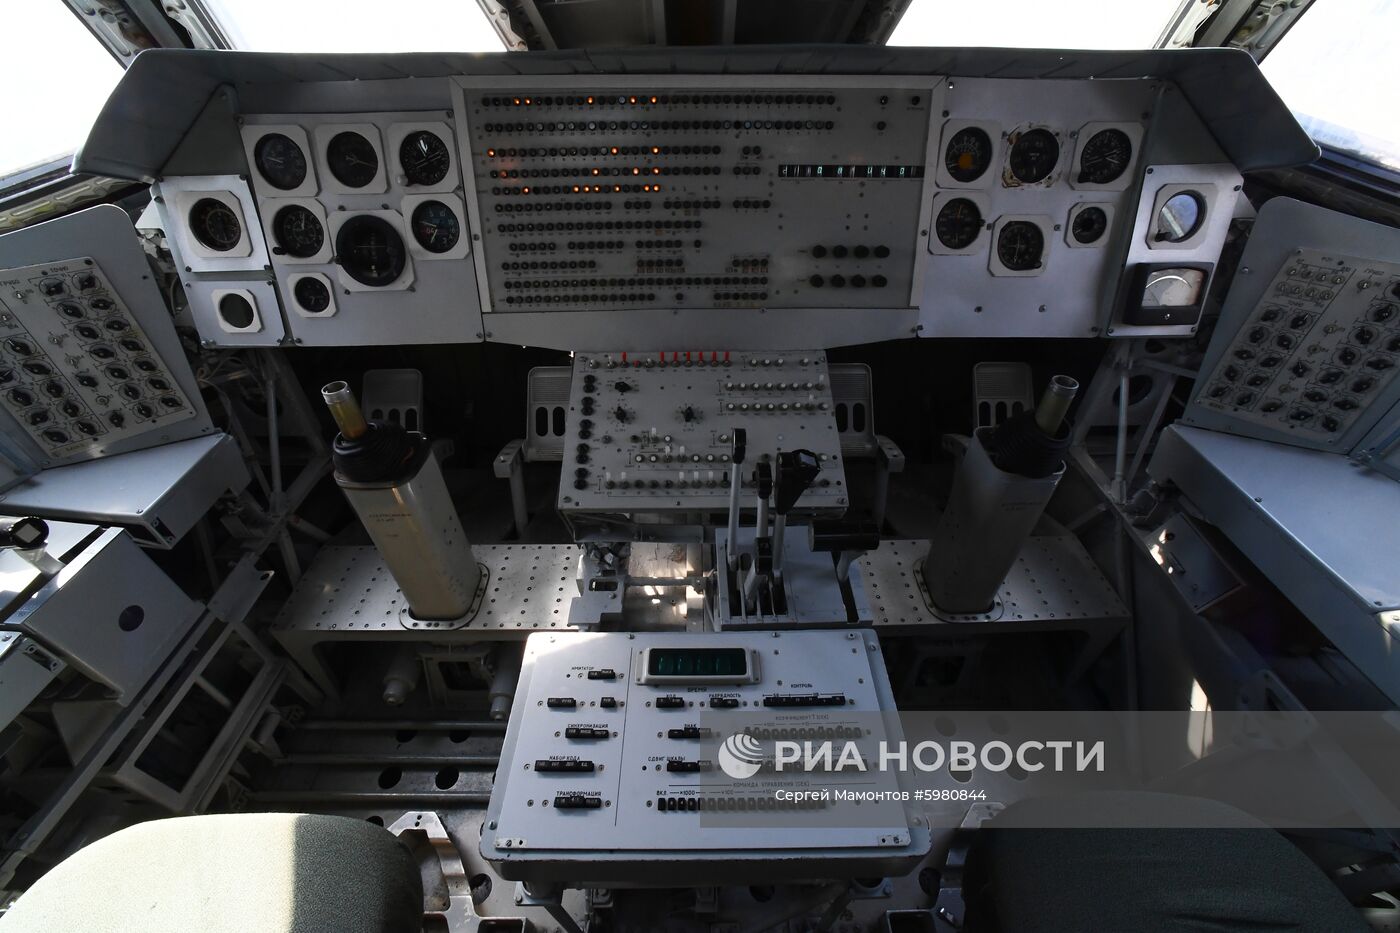 Космический корабль "Буран" в музее истории космодрома Байконур